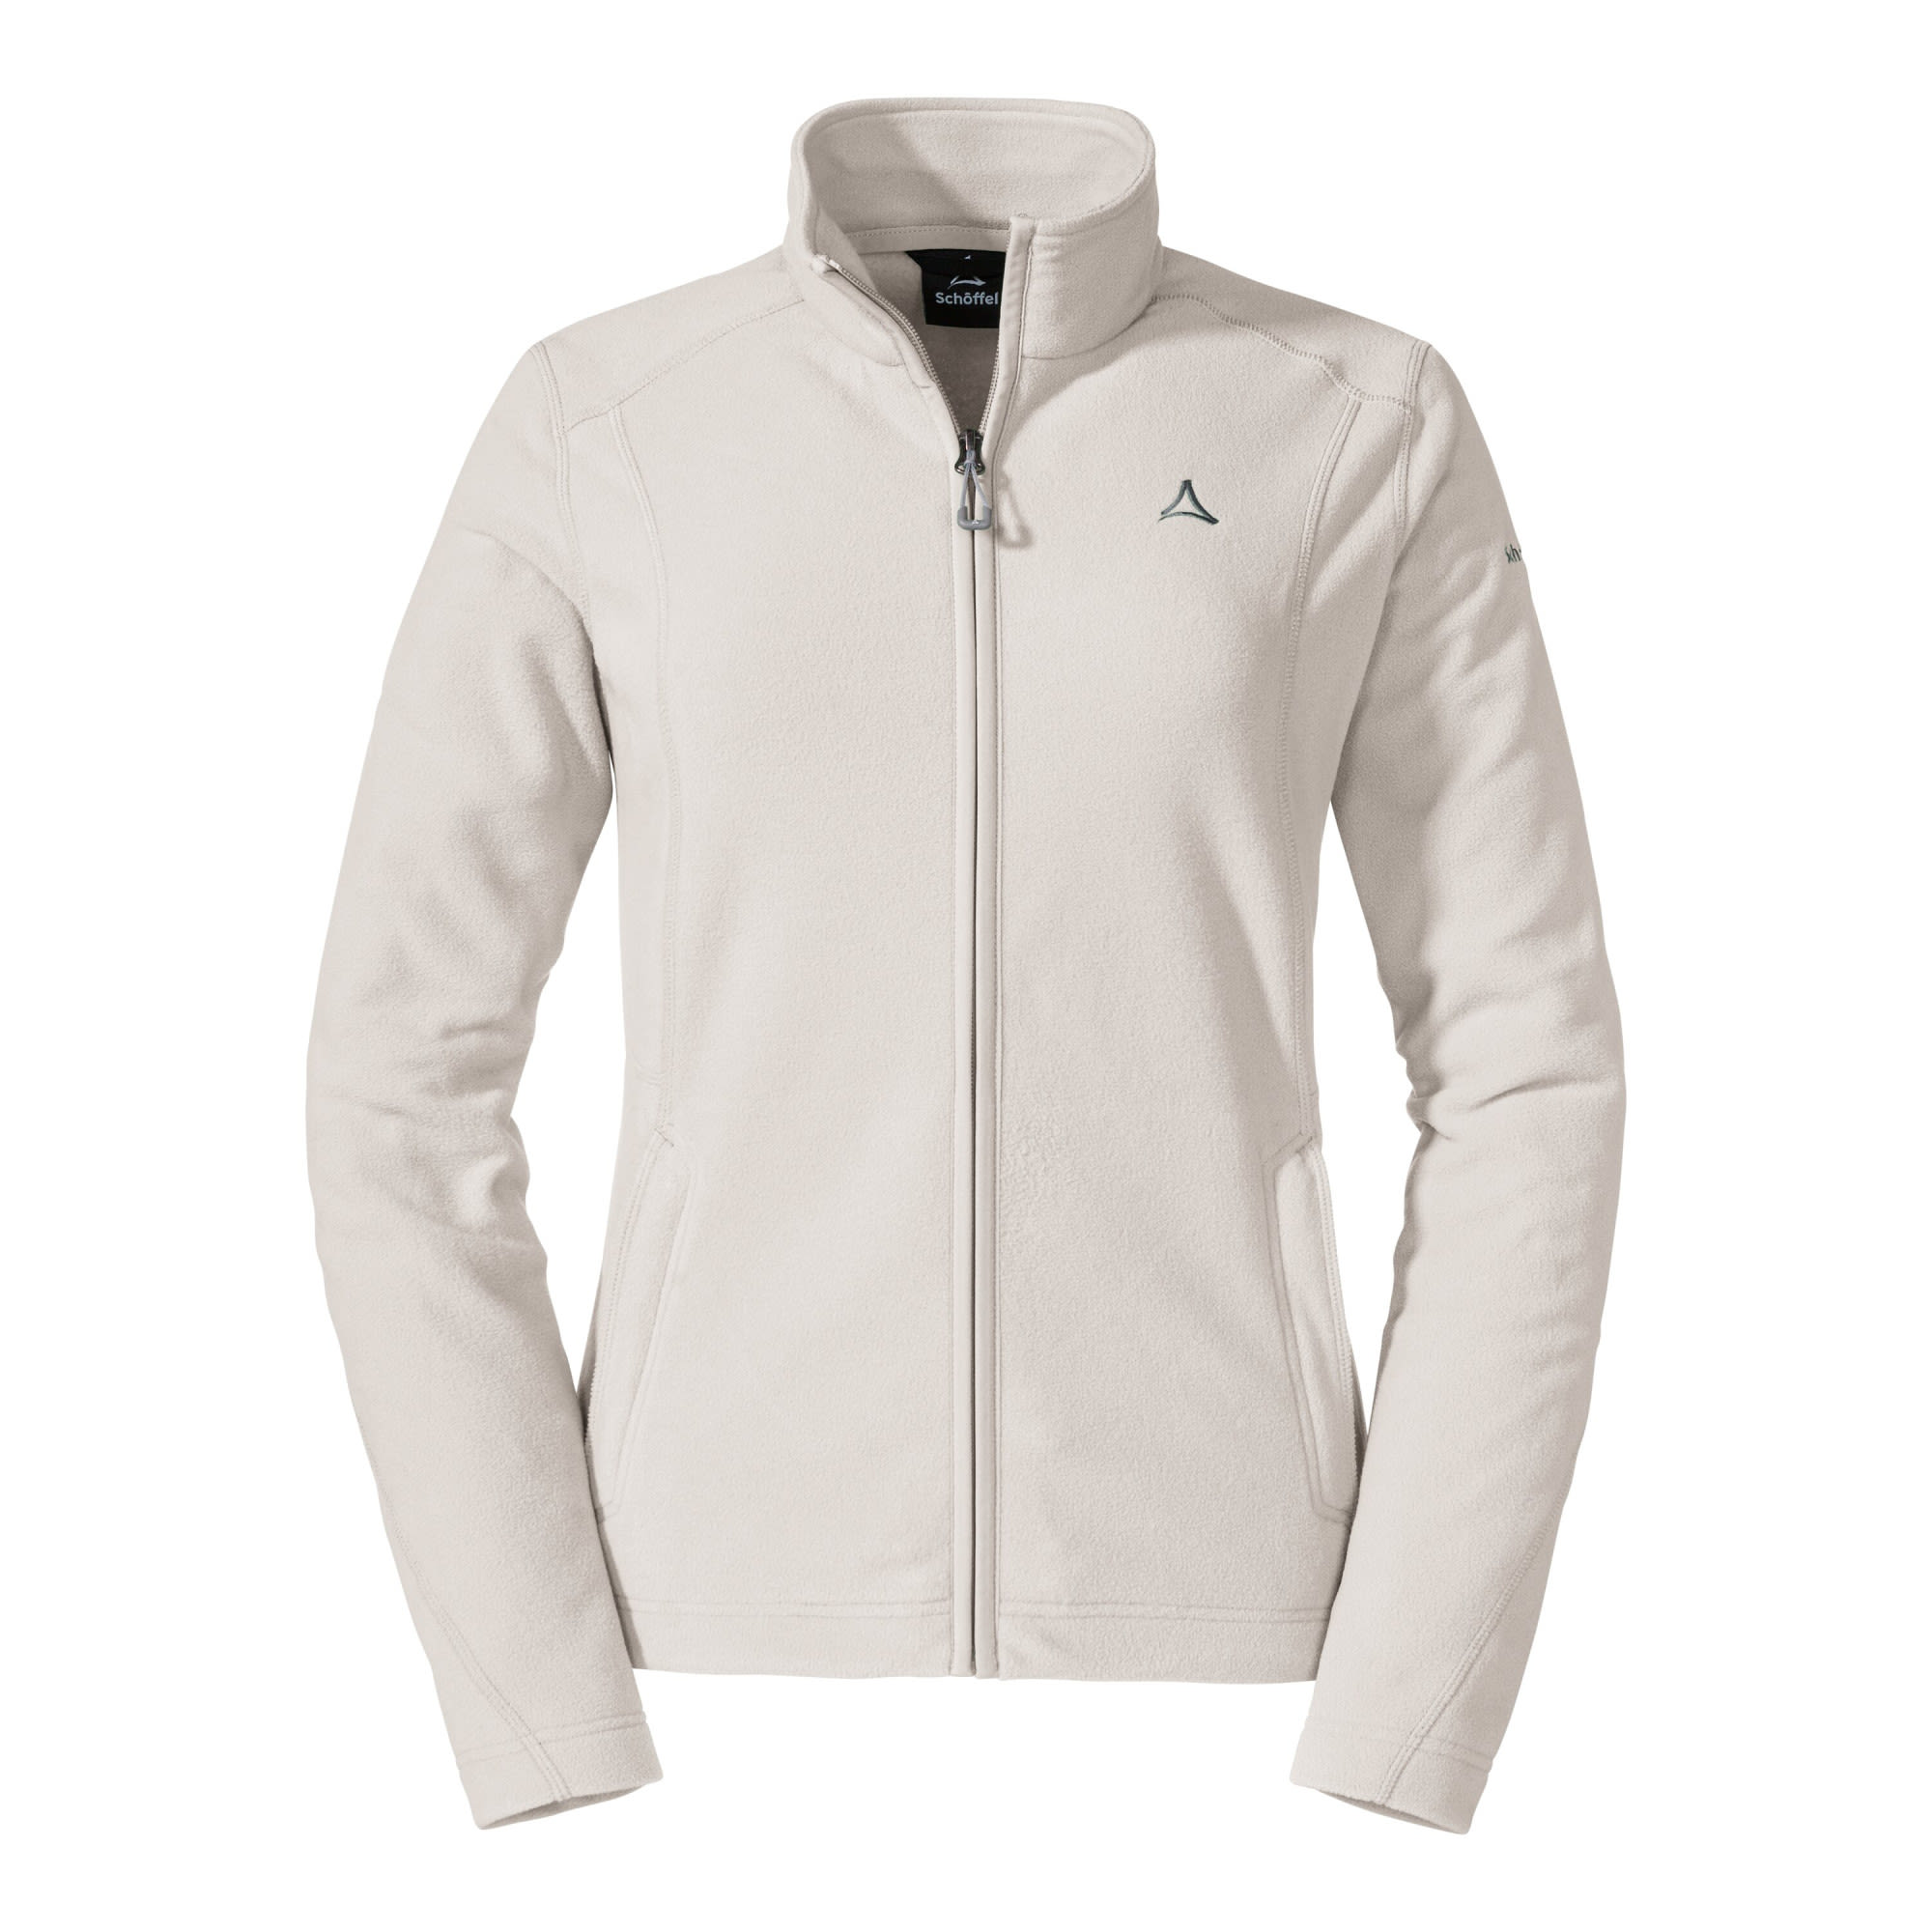 Schöffel W Fleece Jacket Leona3 Weiß | Größe 38 | Damen Anorak